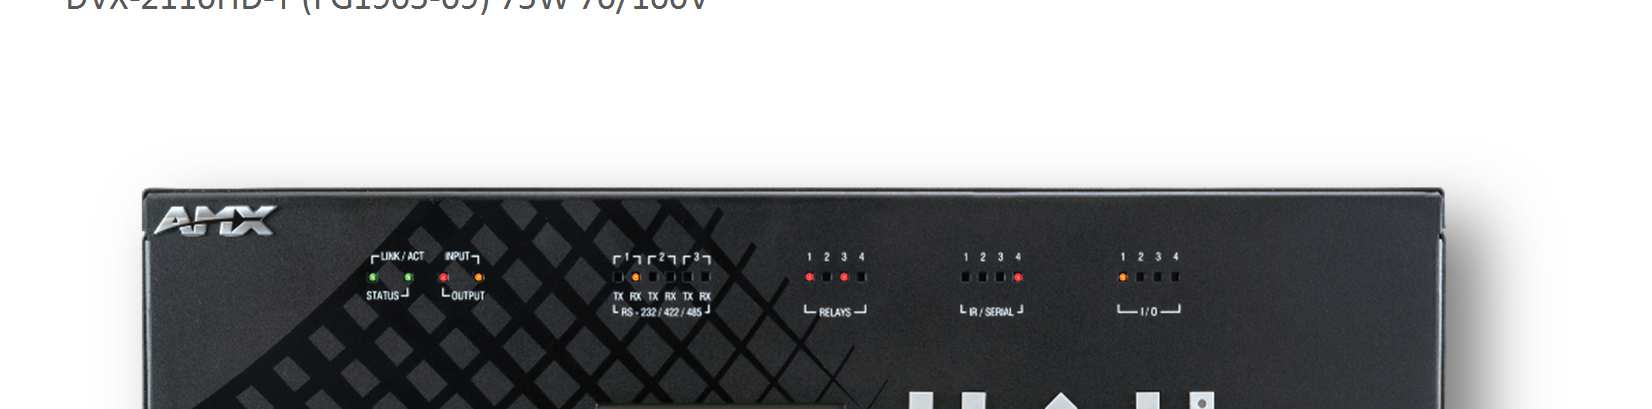 DATA SHEET Selector de Presentaciones Todo-En-Uno 4x2 (Entradas Multi-Formato, HDMI) DVX-2110HD-SP (FG1905-07) 2x25W 8-Ohm DVX-2110HD-T (FG1905-09) 75W 70/100V Presentación El Enova DVX-2110HD es un